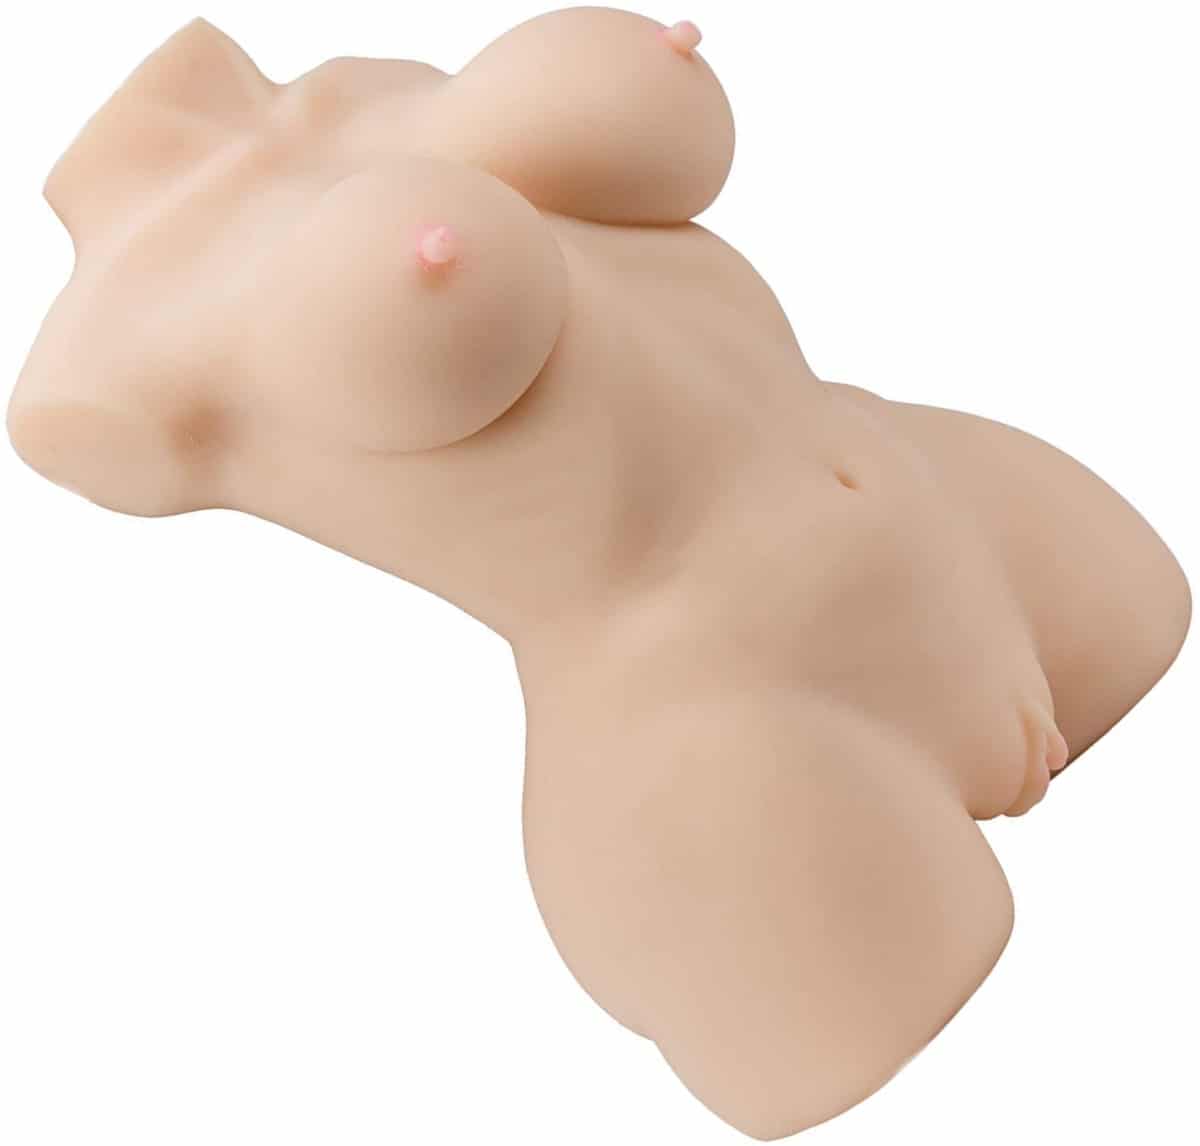 Ynot female body sex doll